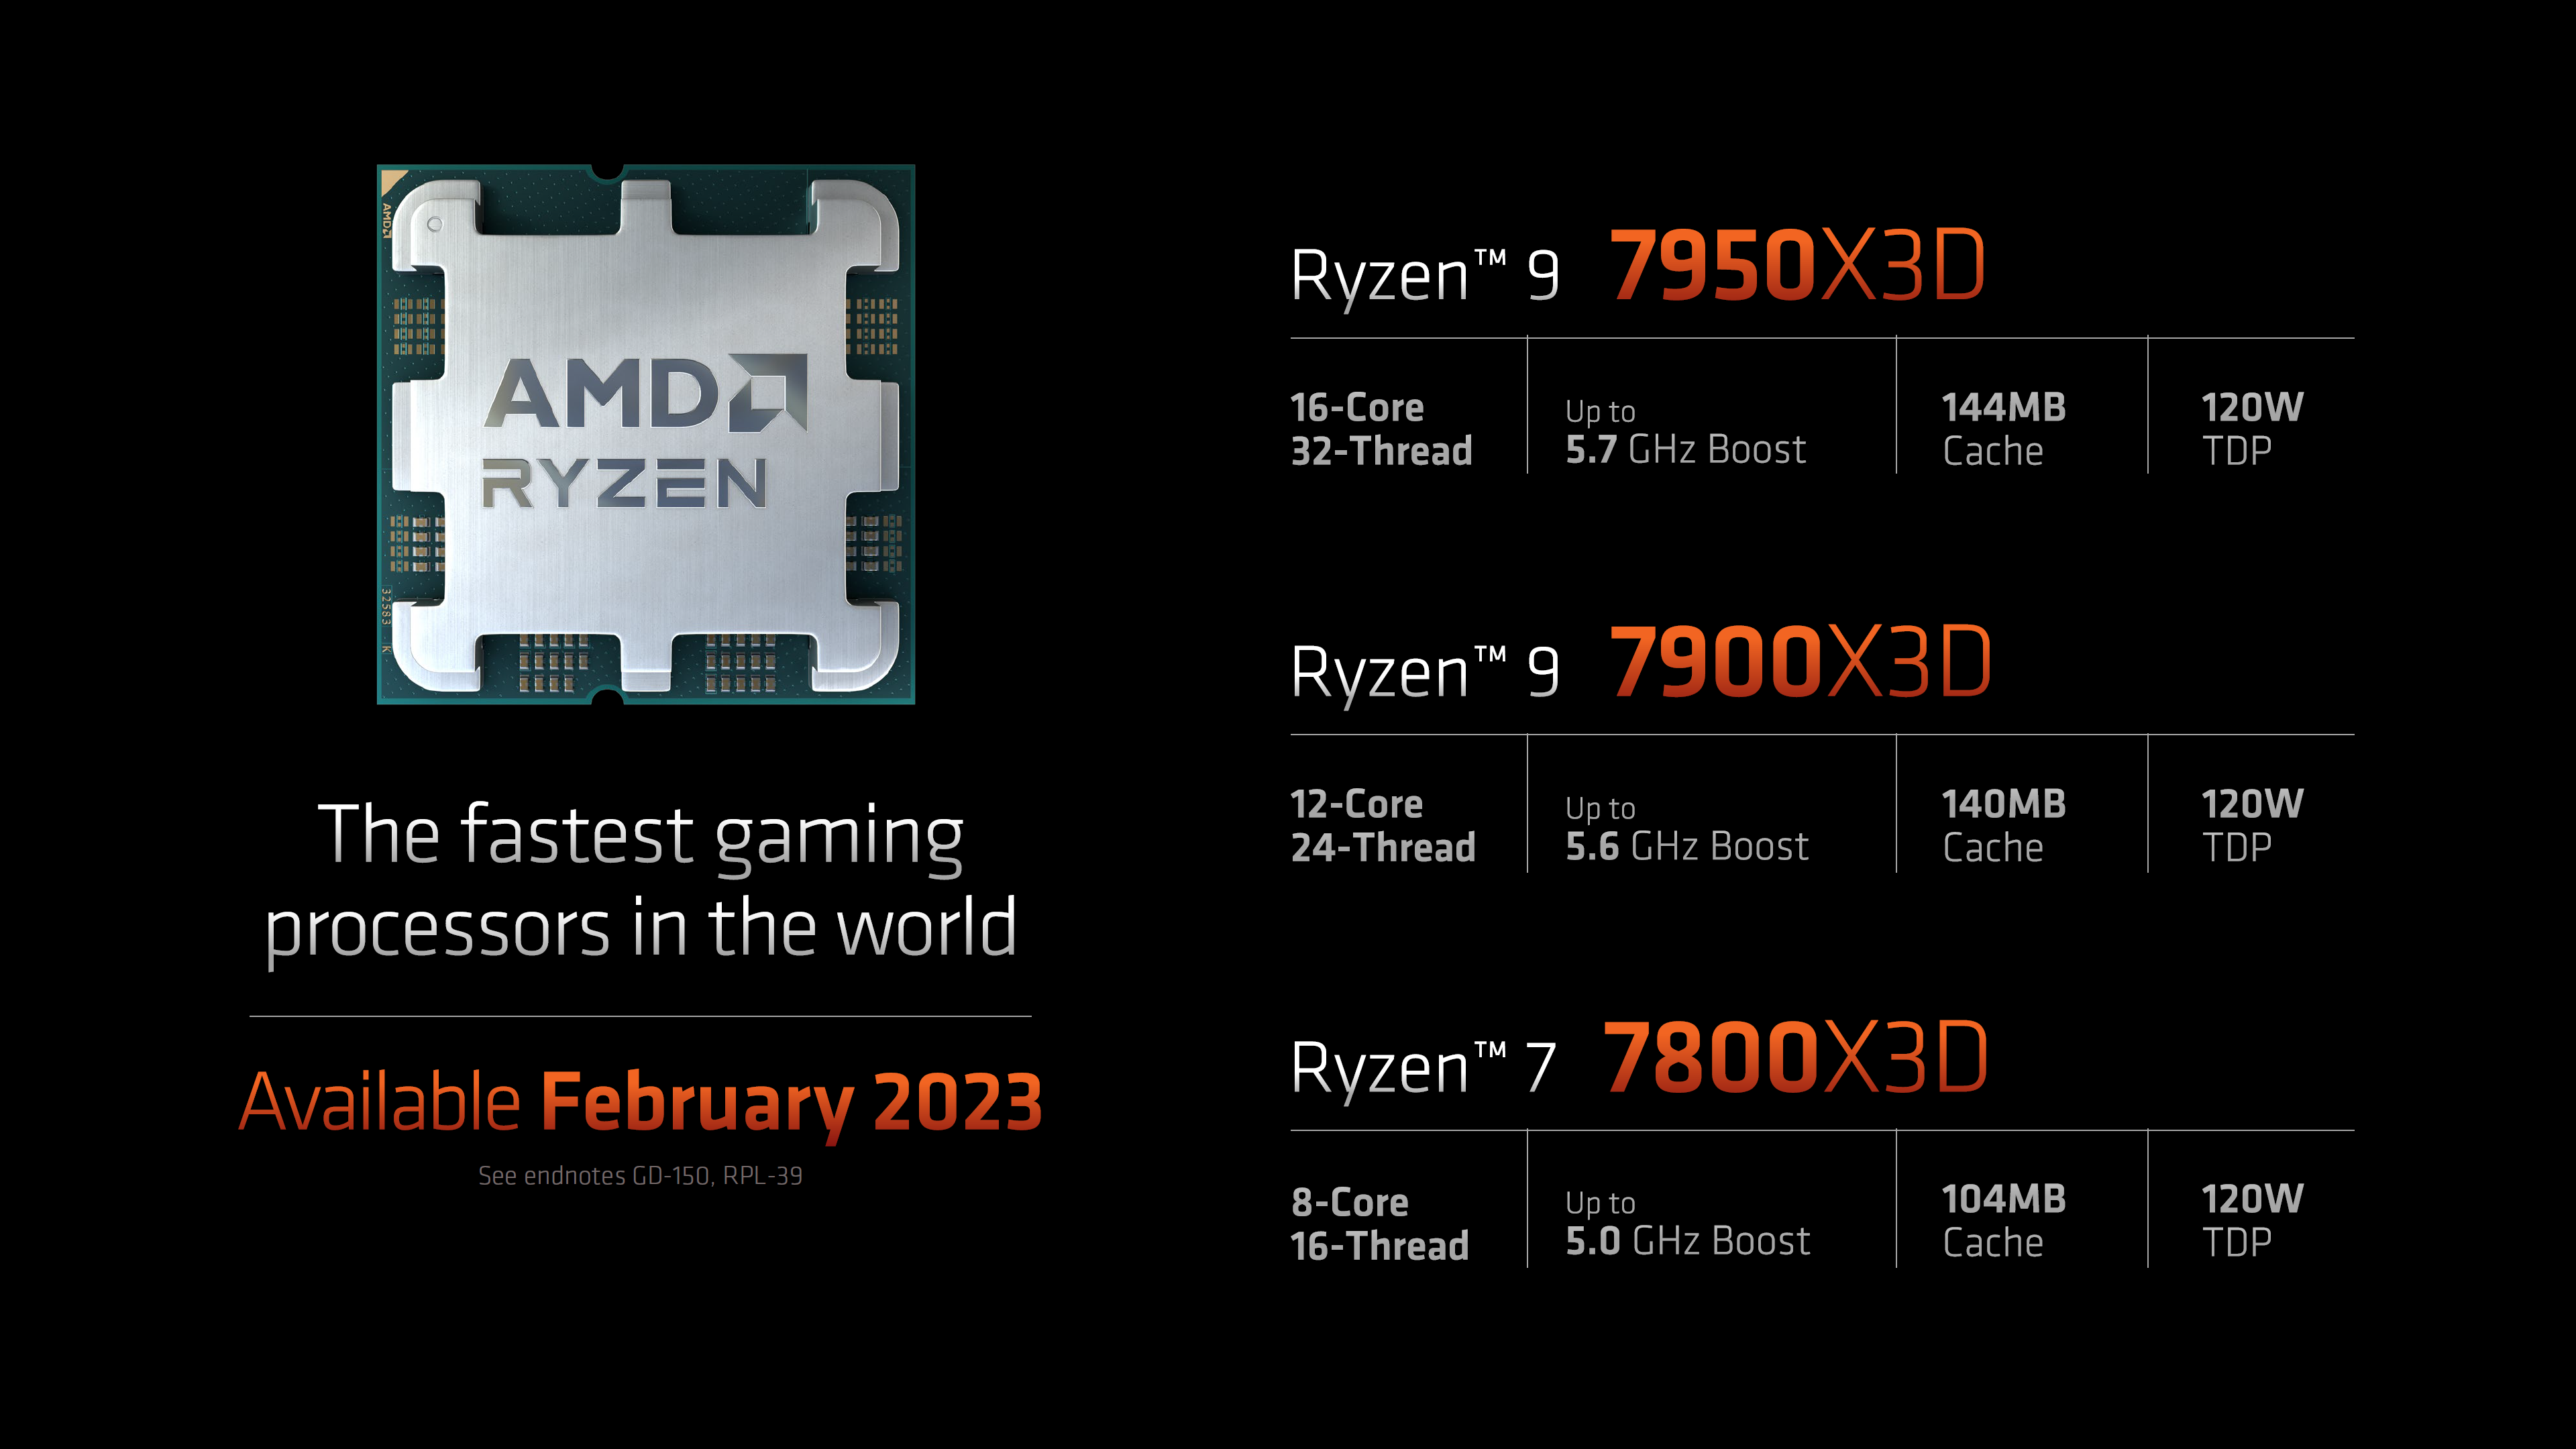 پردازنده AMD Ryzen 9 7950X3D با 192 مگابایت حافظه کش L3 دیده شده است